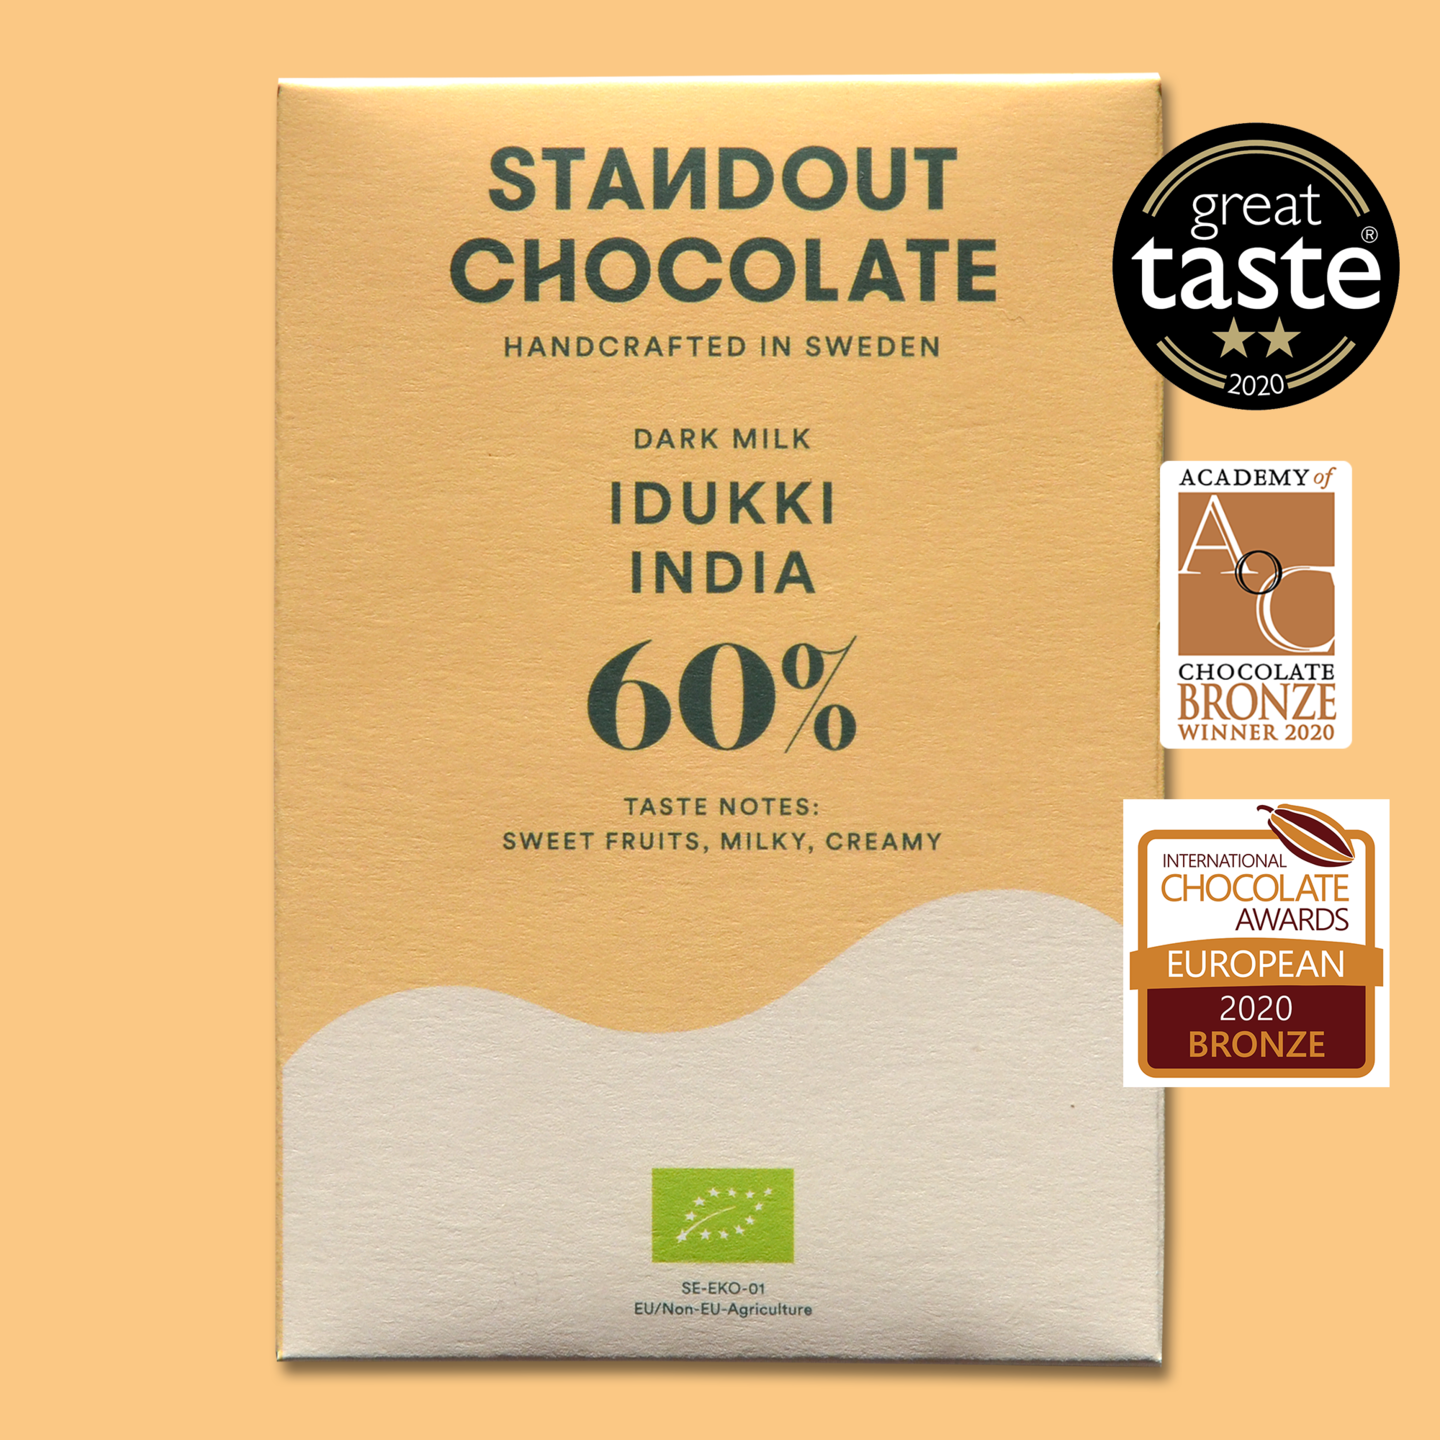 STANDOUT CHOCOLATE Milchschokolade | Dark Milk »India Idukki« 60% | BIO | 50g